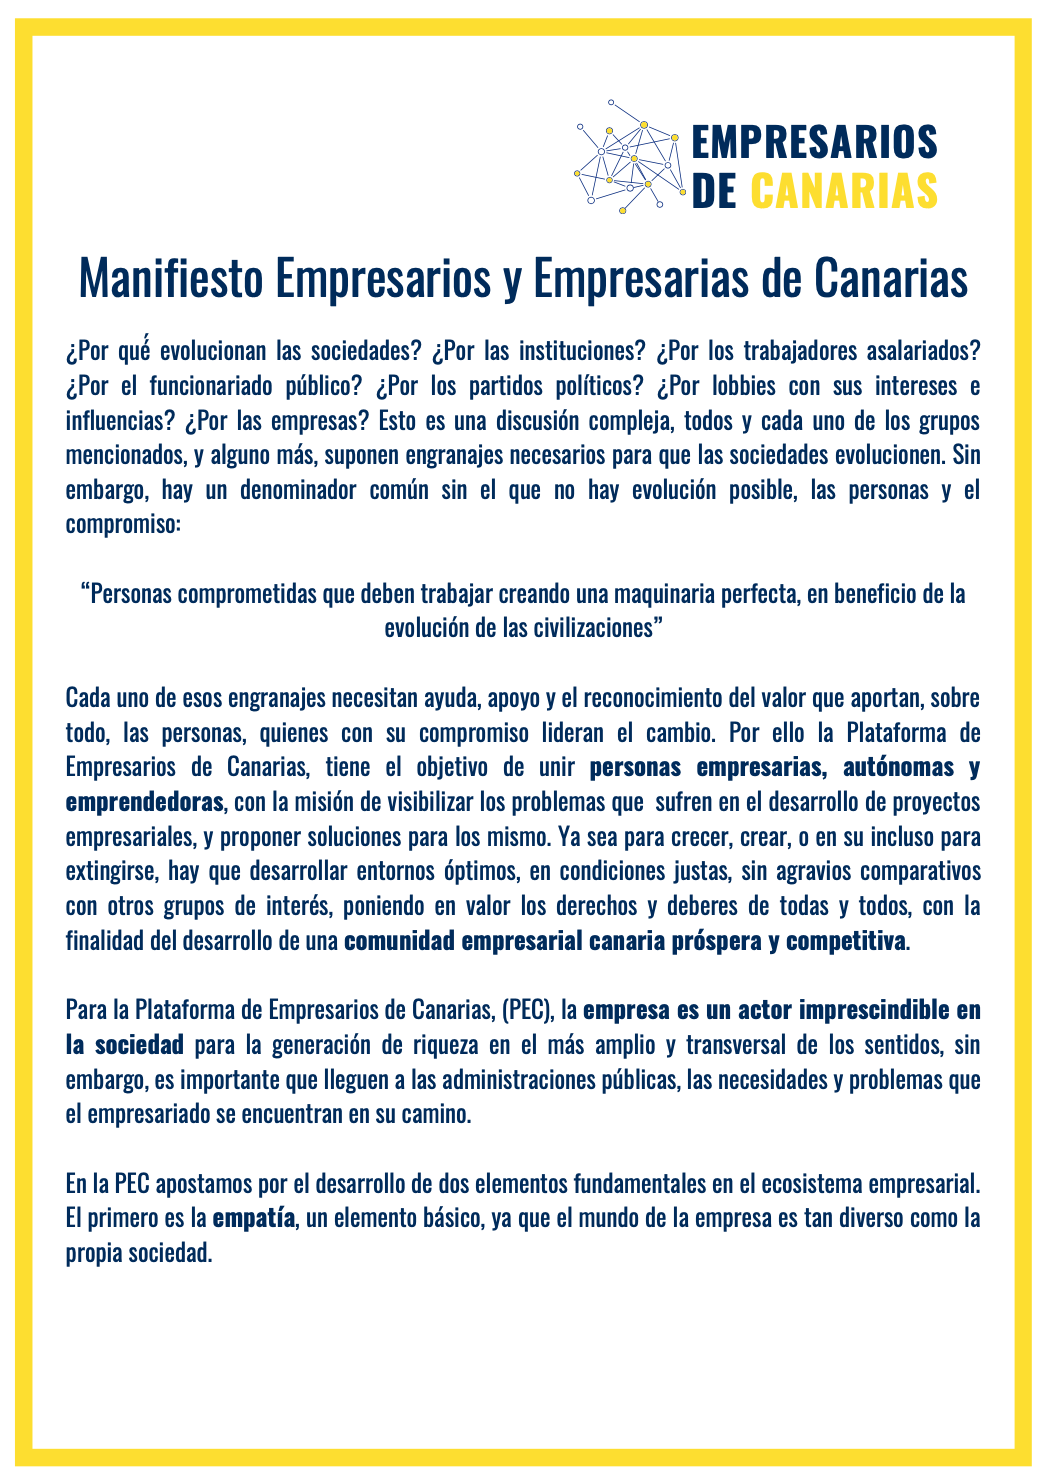 Manifiesto de la plataforma empresarios y empresarias de canarias (1)